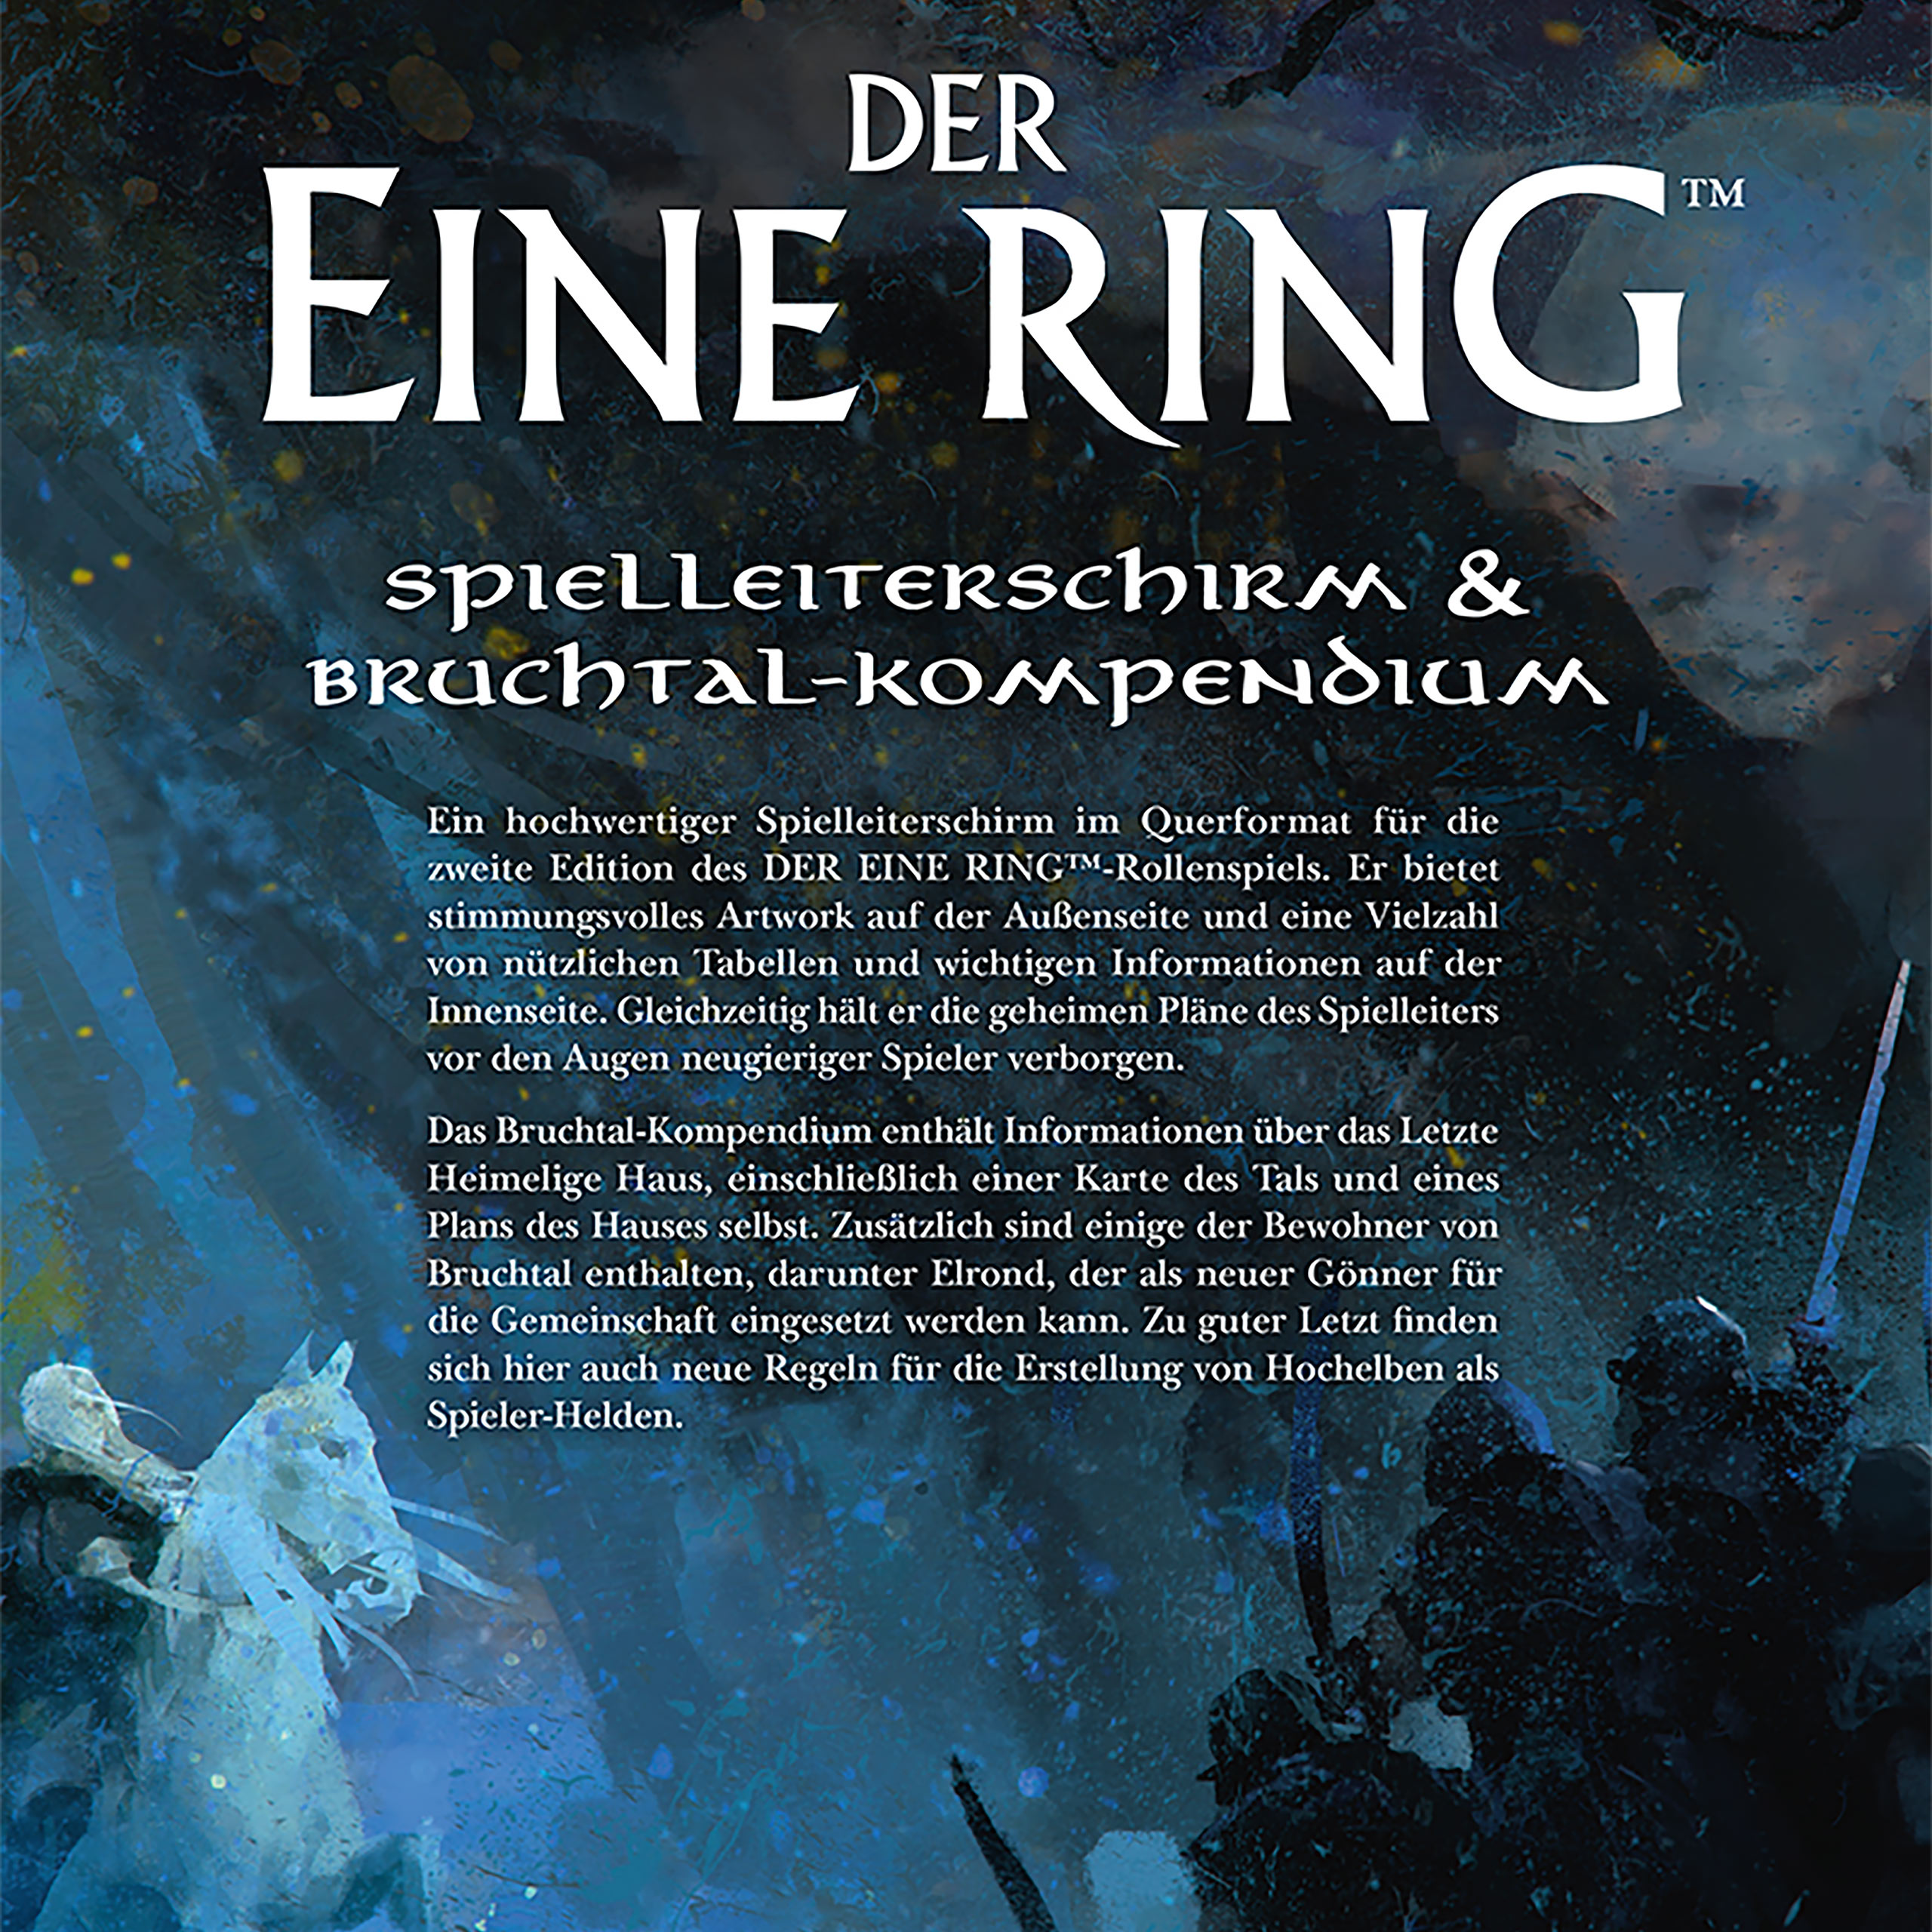 Herr der Ringe - Der Eine Ring Spielleiterschirm & Bruchtal-Kompendium